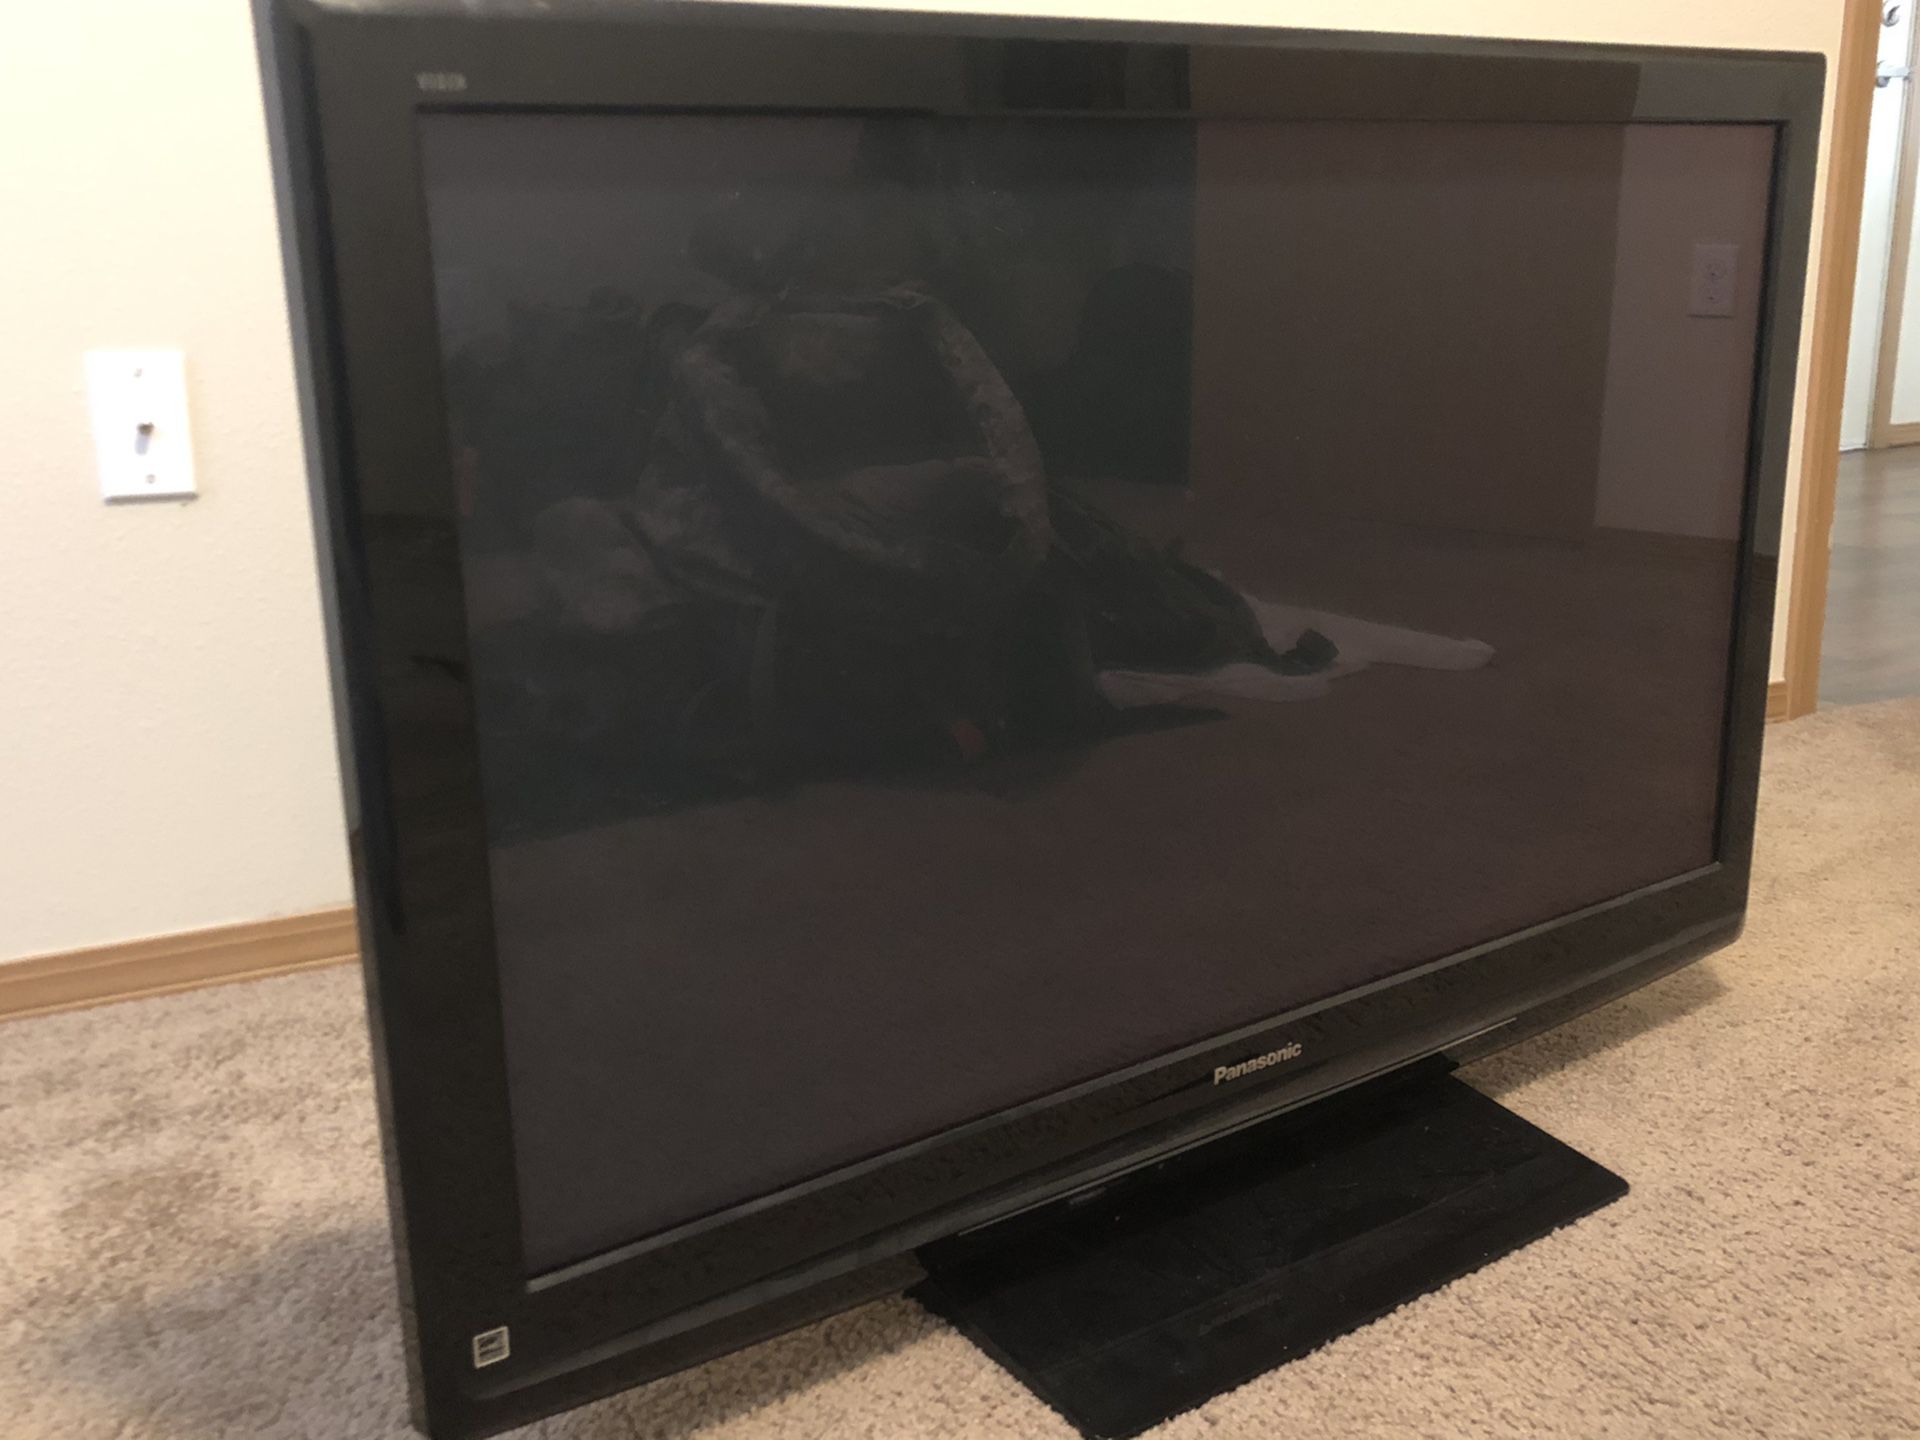 Panasonic Viera 42 inch TV